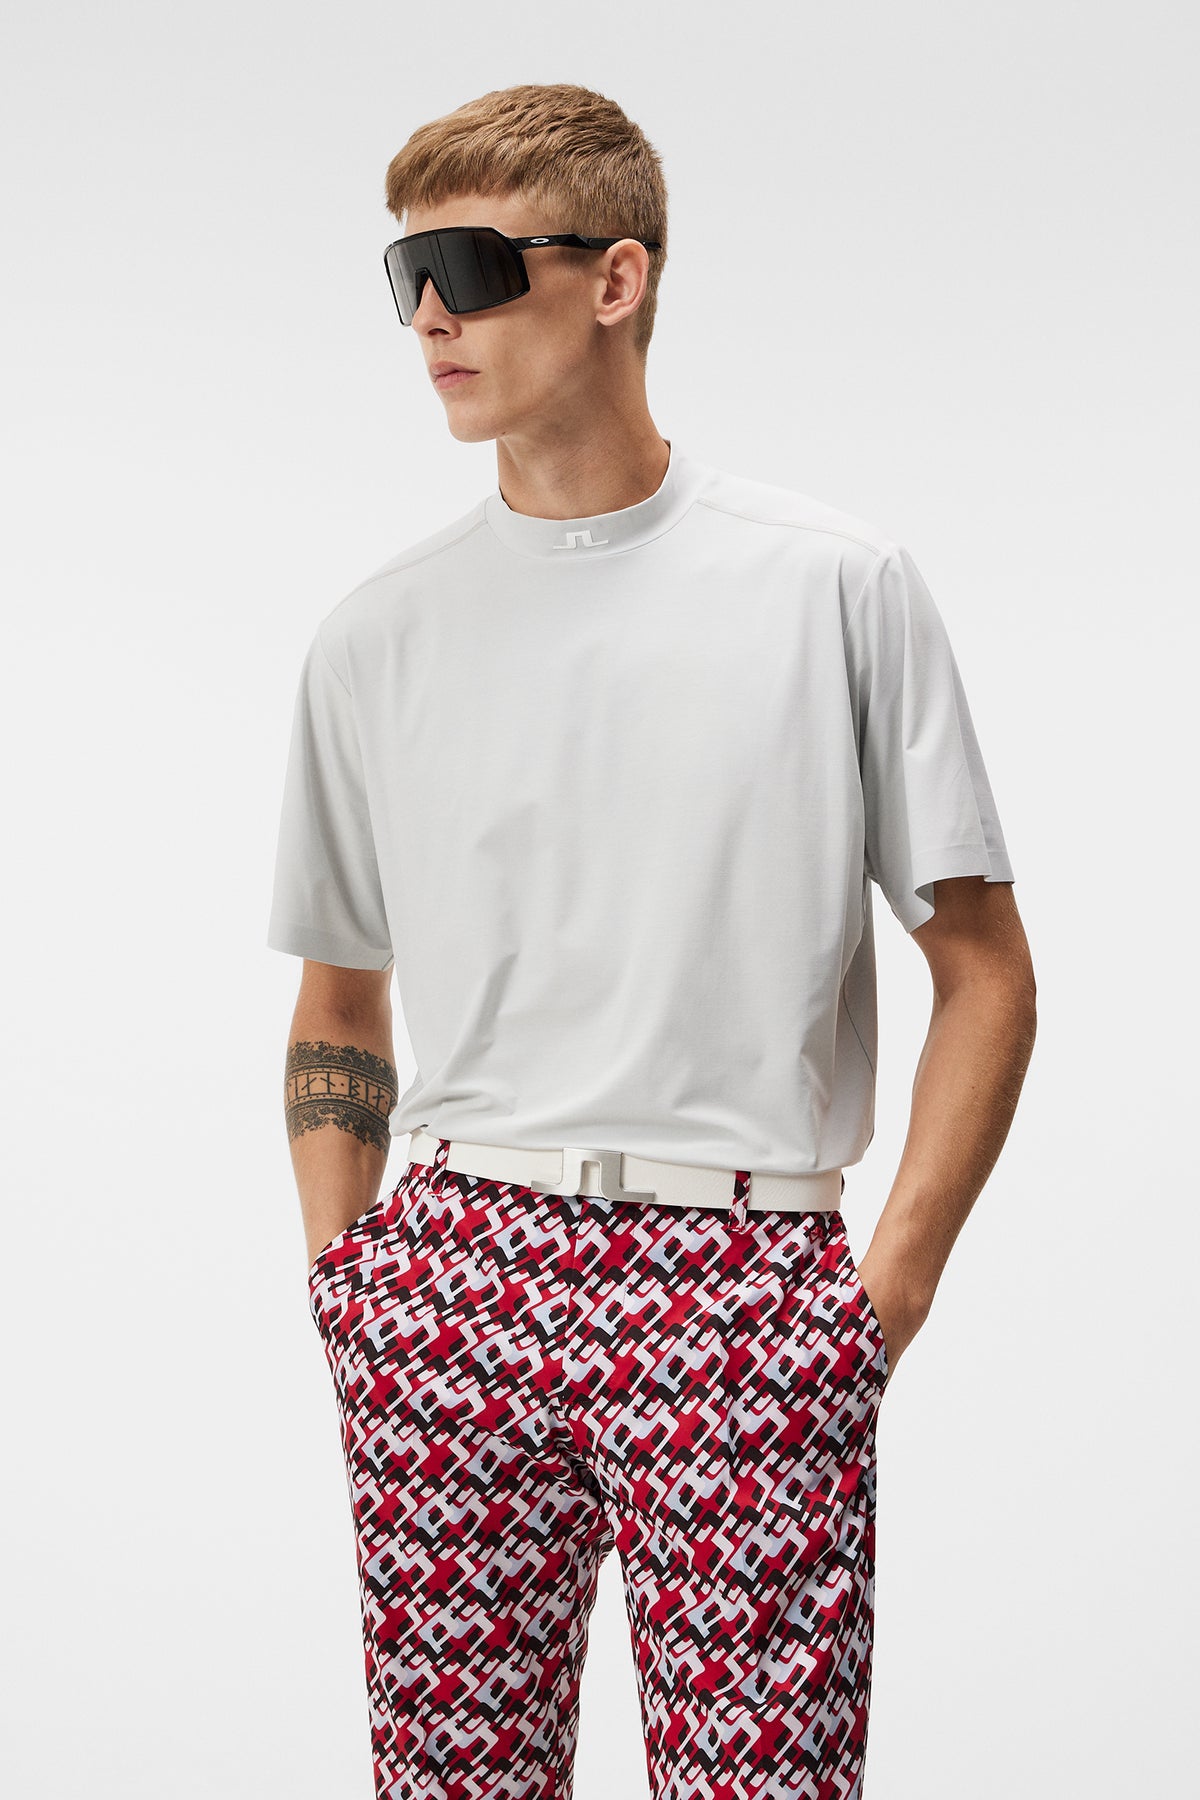 Pajama Tank Top and Shorts - White/gray melange - Men